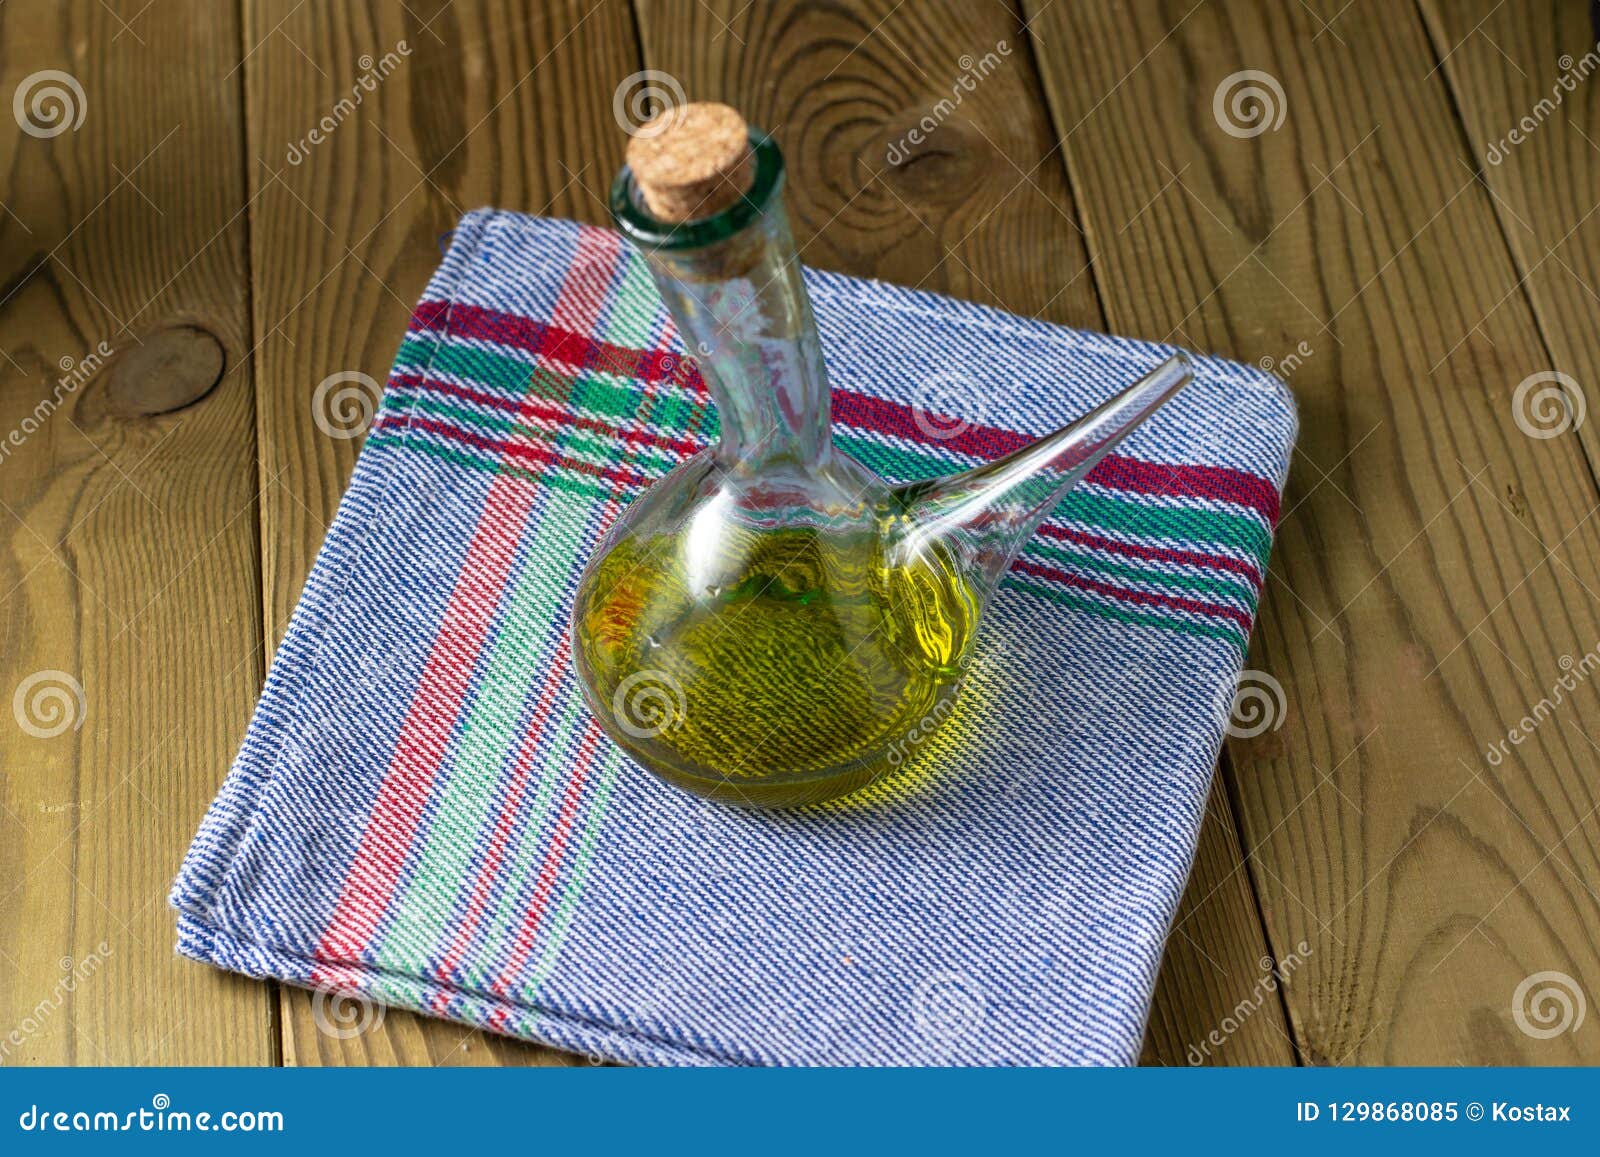 aceite de oliva en mesa de madera